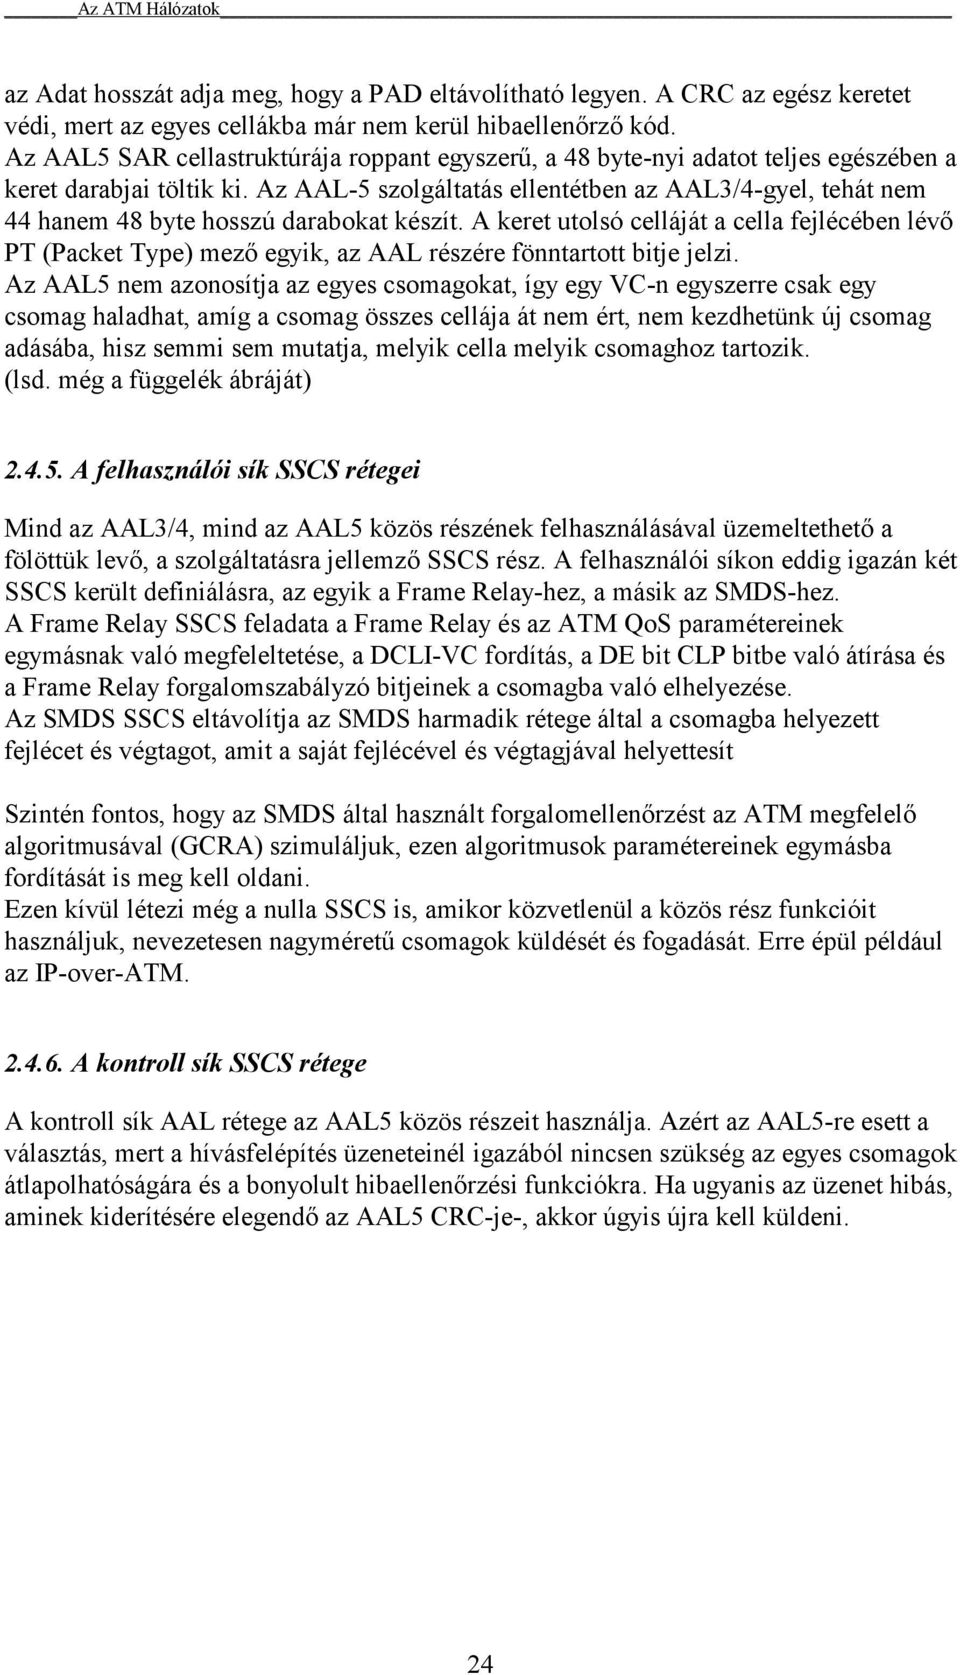 Az AAL-5 szolgáltatás ellentétben az AAL3/4-gyel, tehát nem 44 hanem 48 byte hosszú darabokat készít.